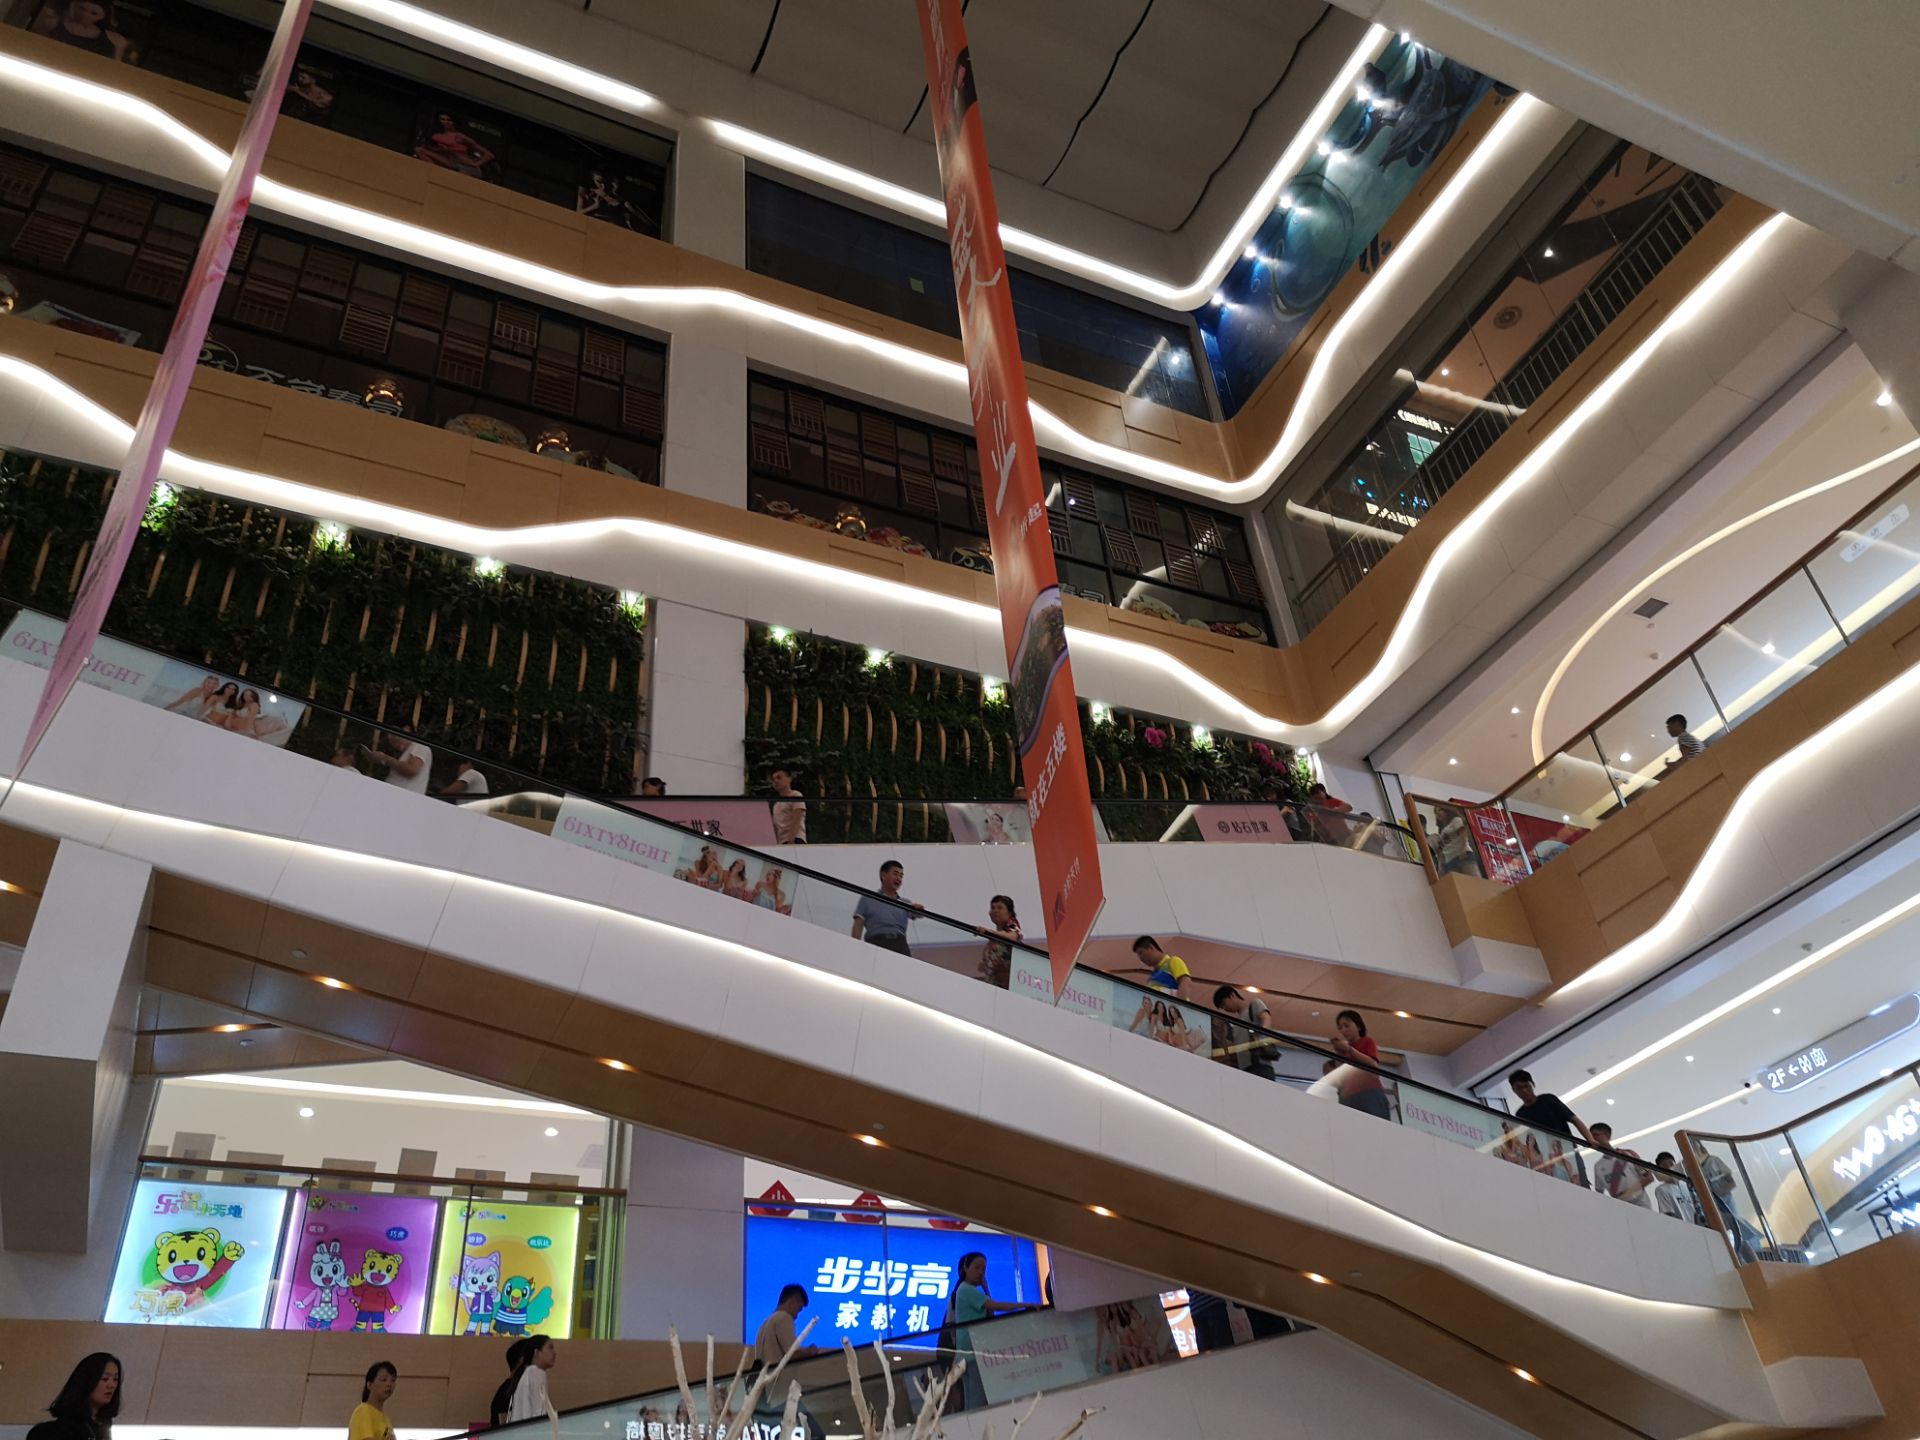 【携程攻略】广州金铂广场(购物商场)购物,从同和地铁站出来,过条马路